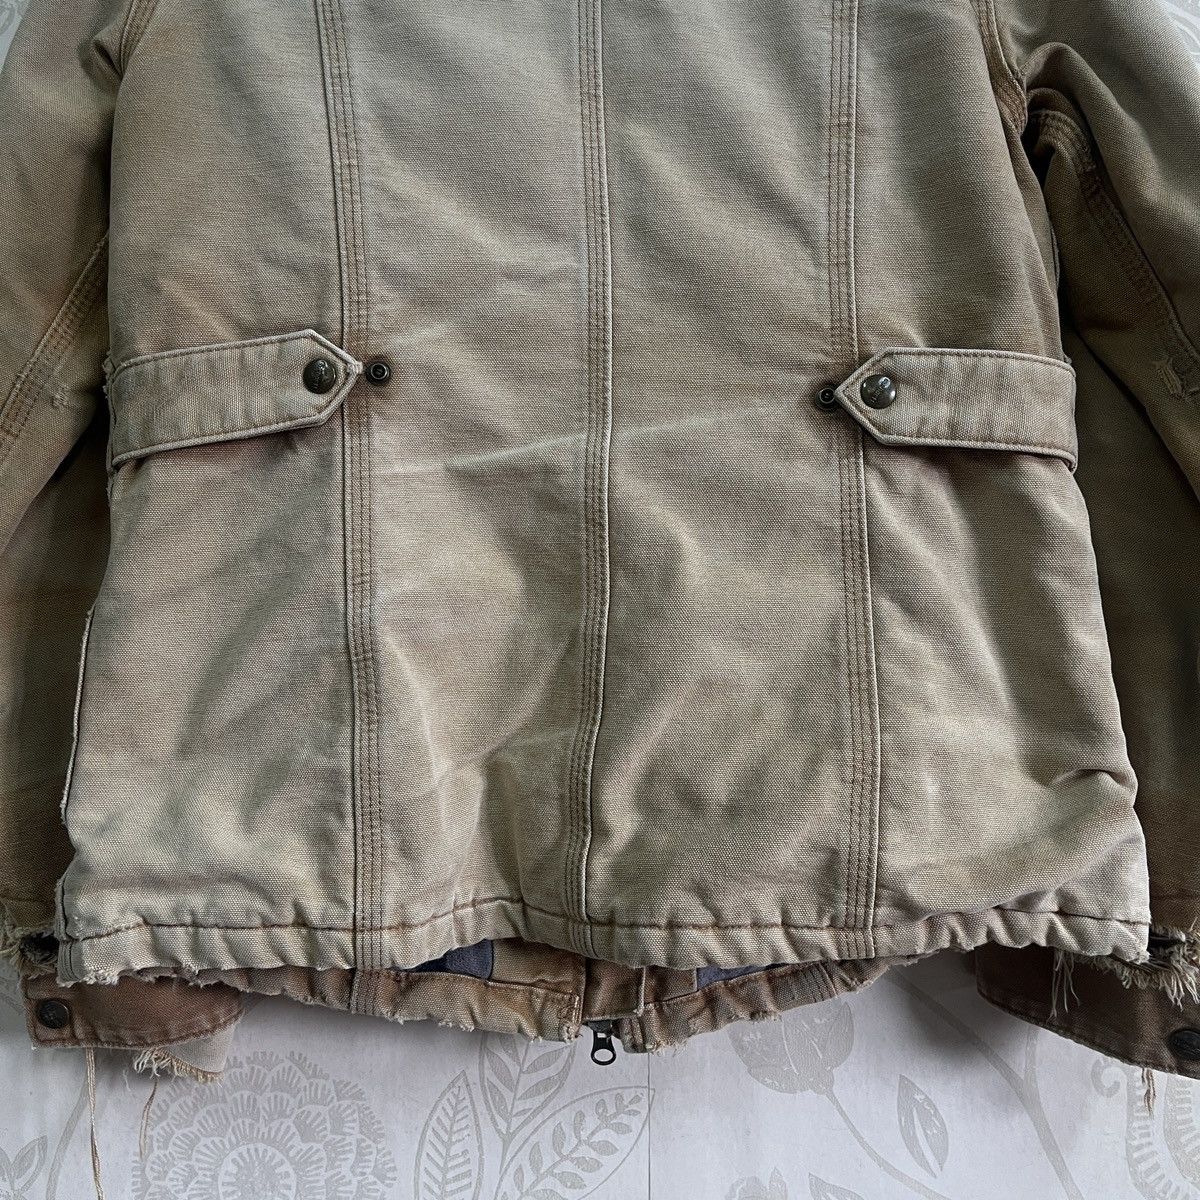 Vintage - Carhartt Blanket Jacket Distressed Workers Denim Jacket - 14